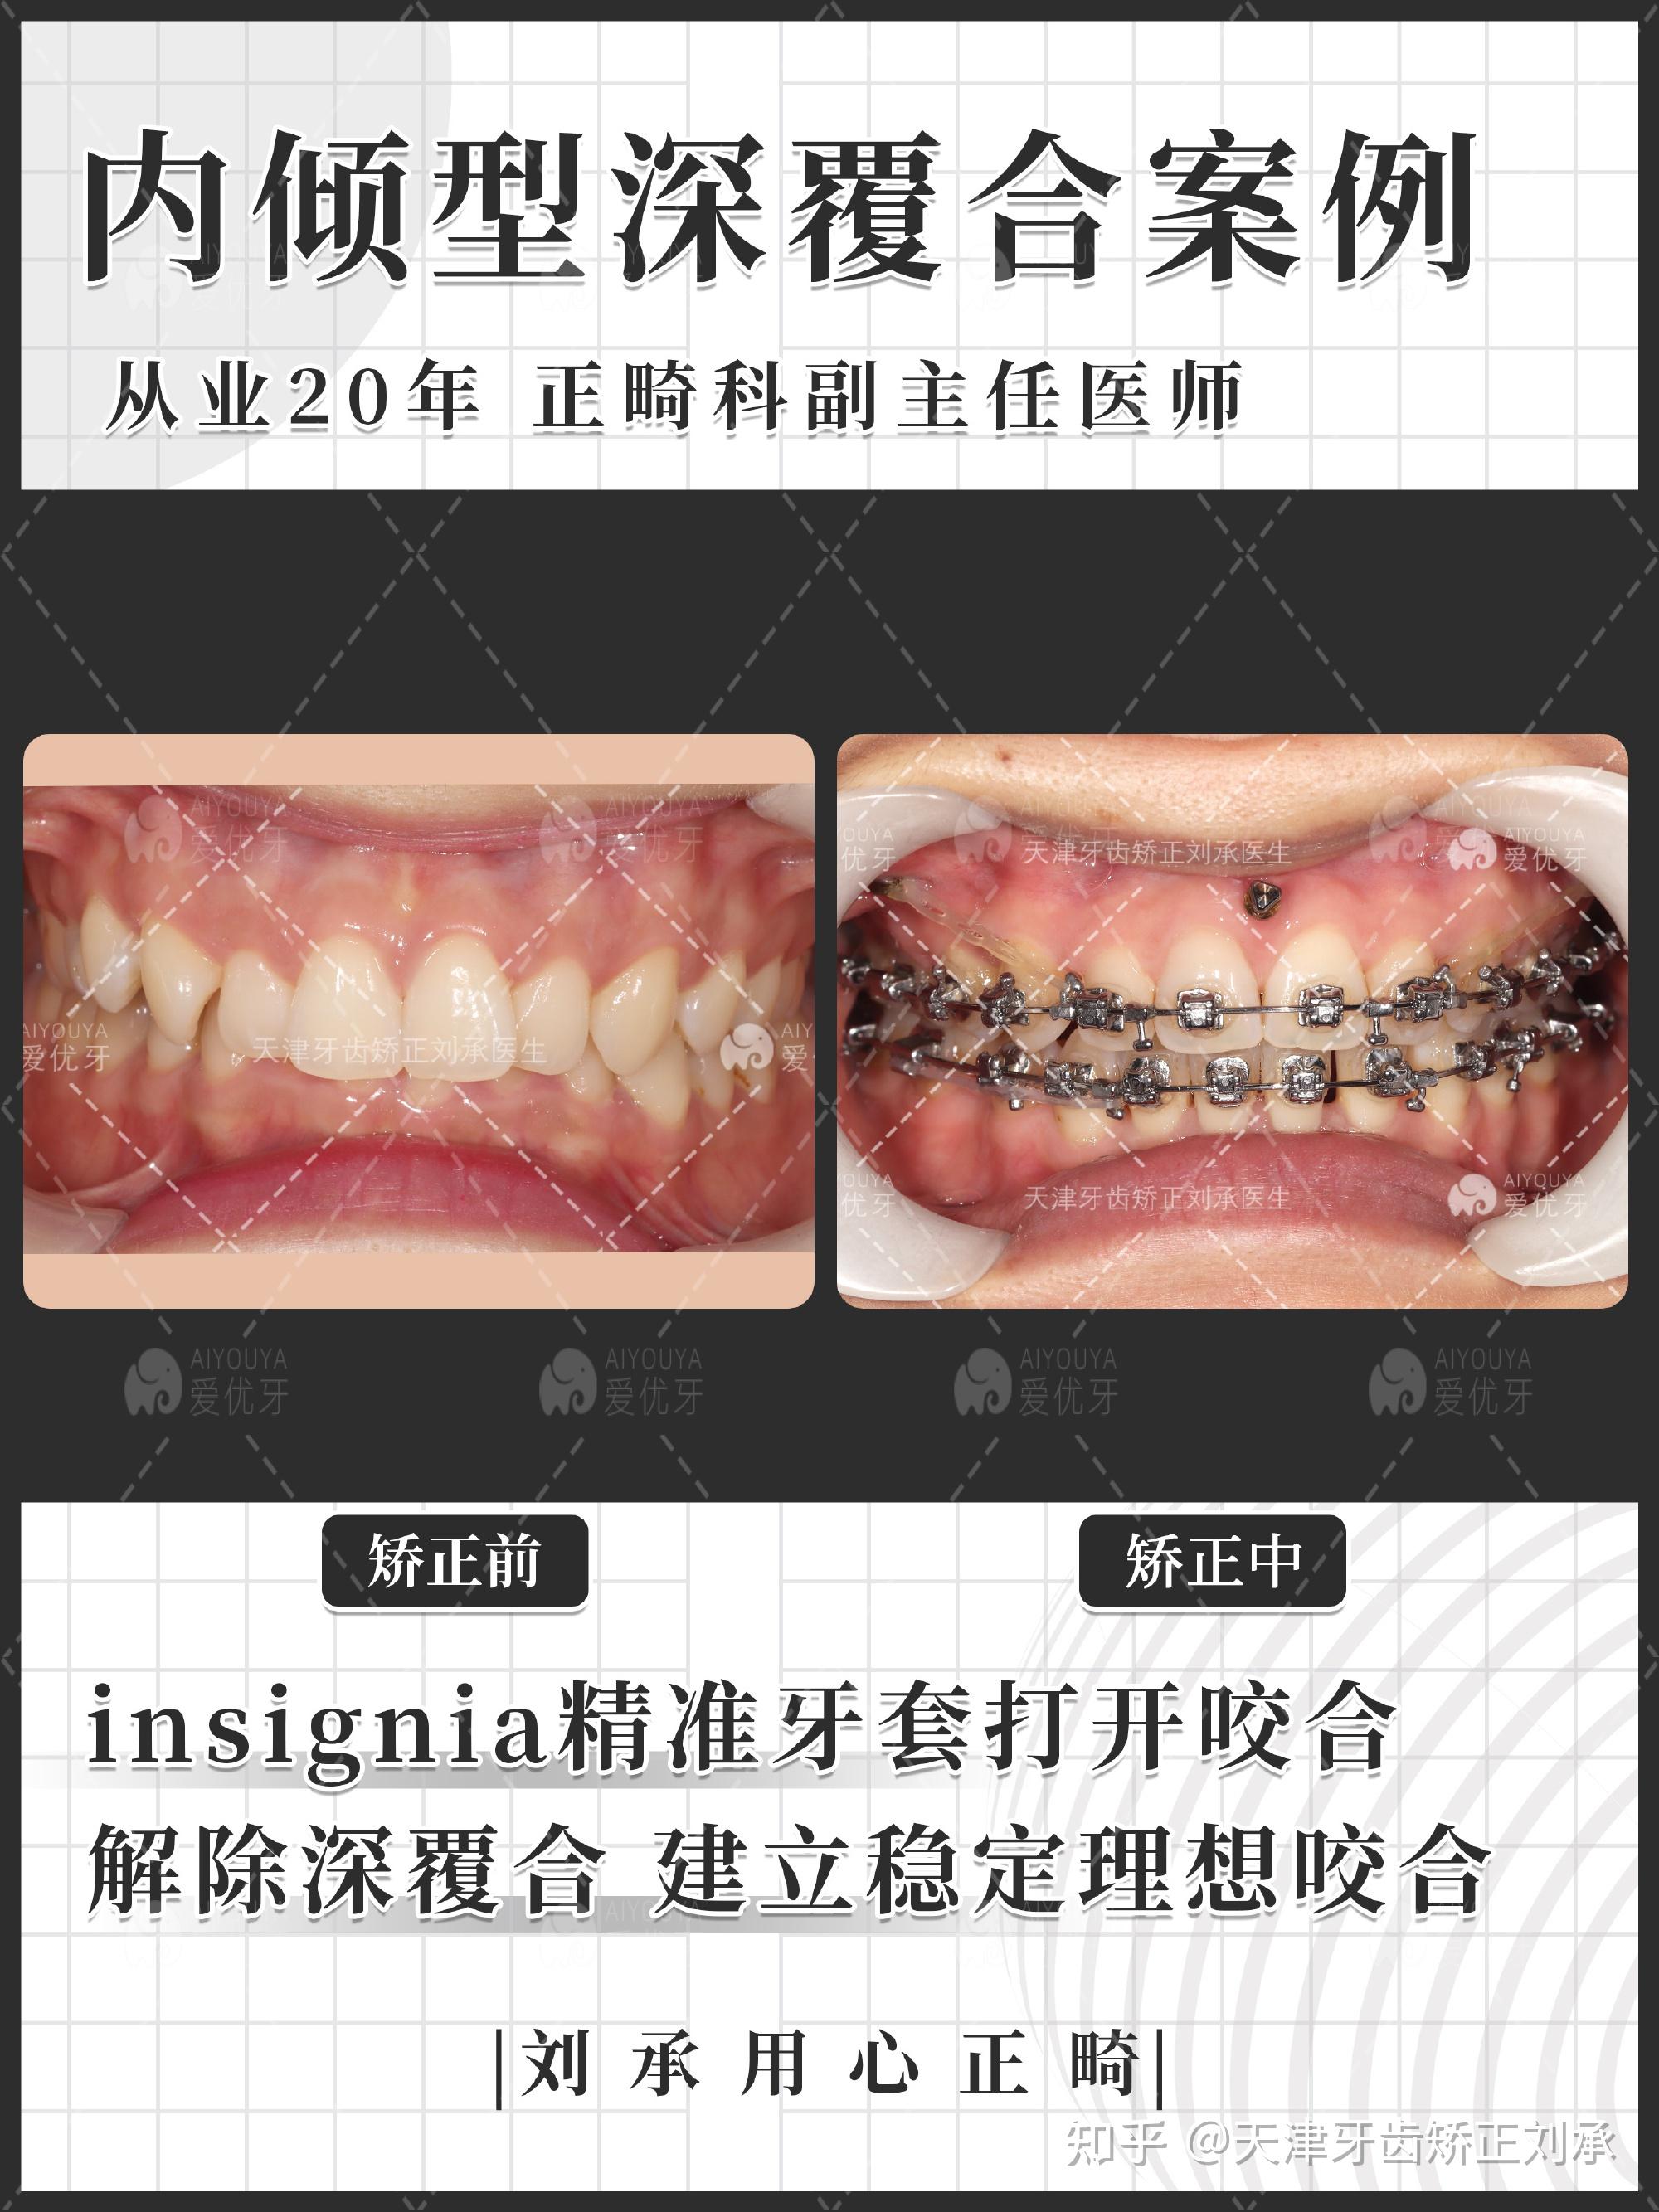 济南牙齿矫正丨济南整牙丨开唇露齿+牙周病丨牙周正畸联合治疗案例 - 知乎